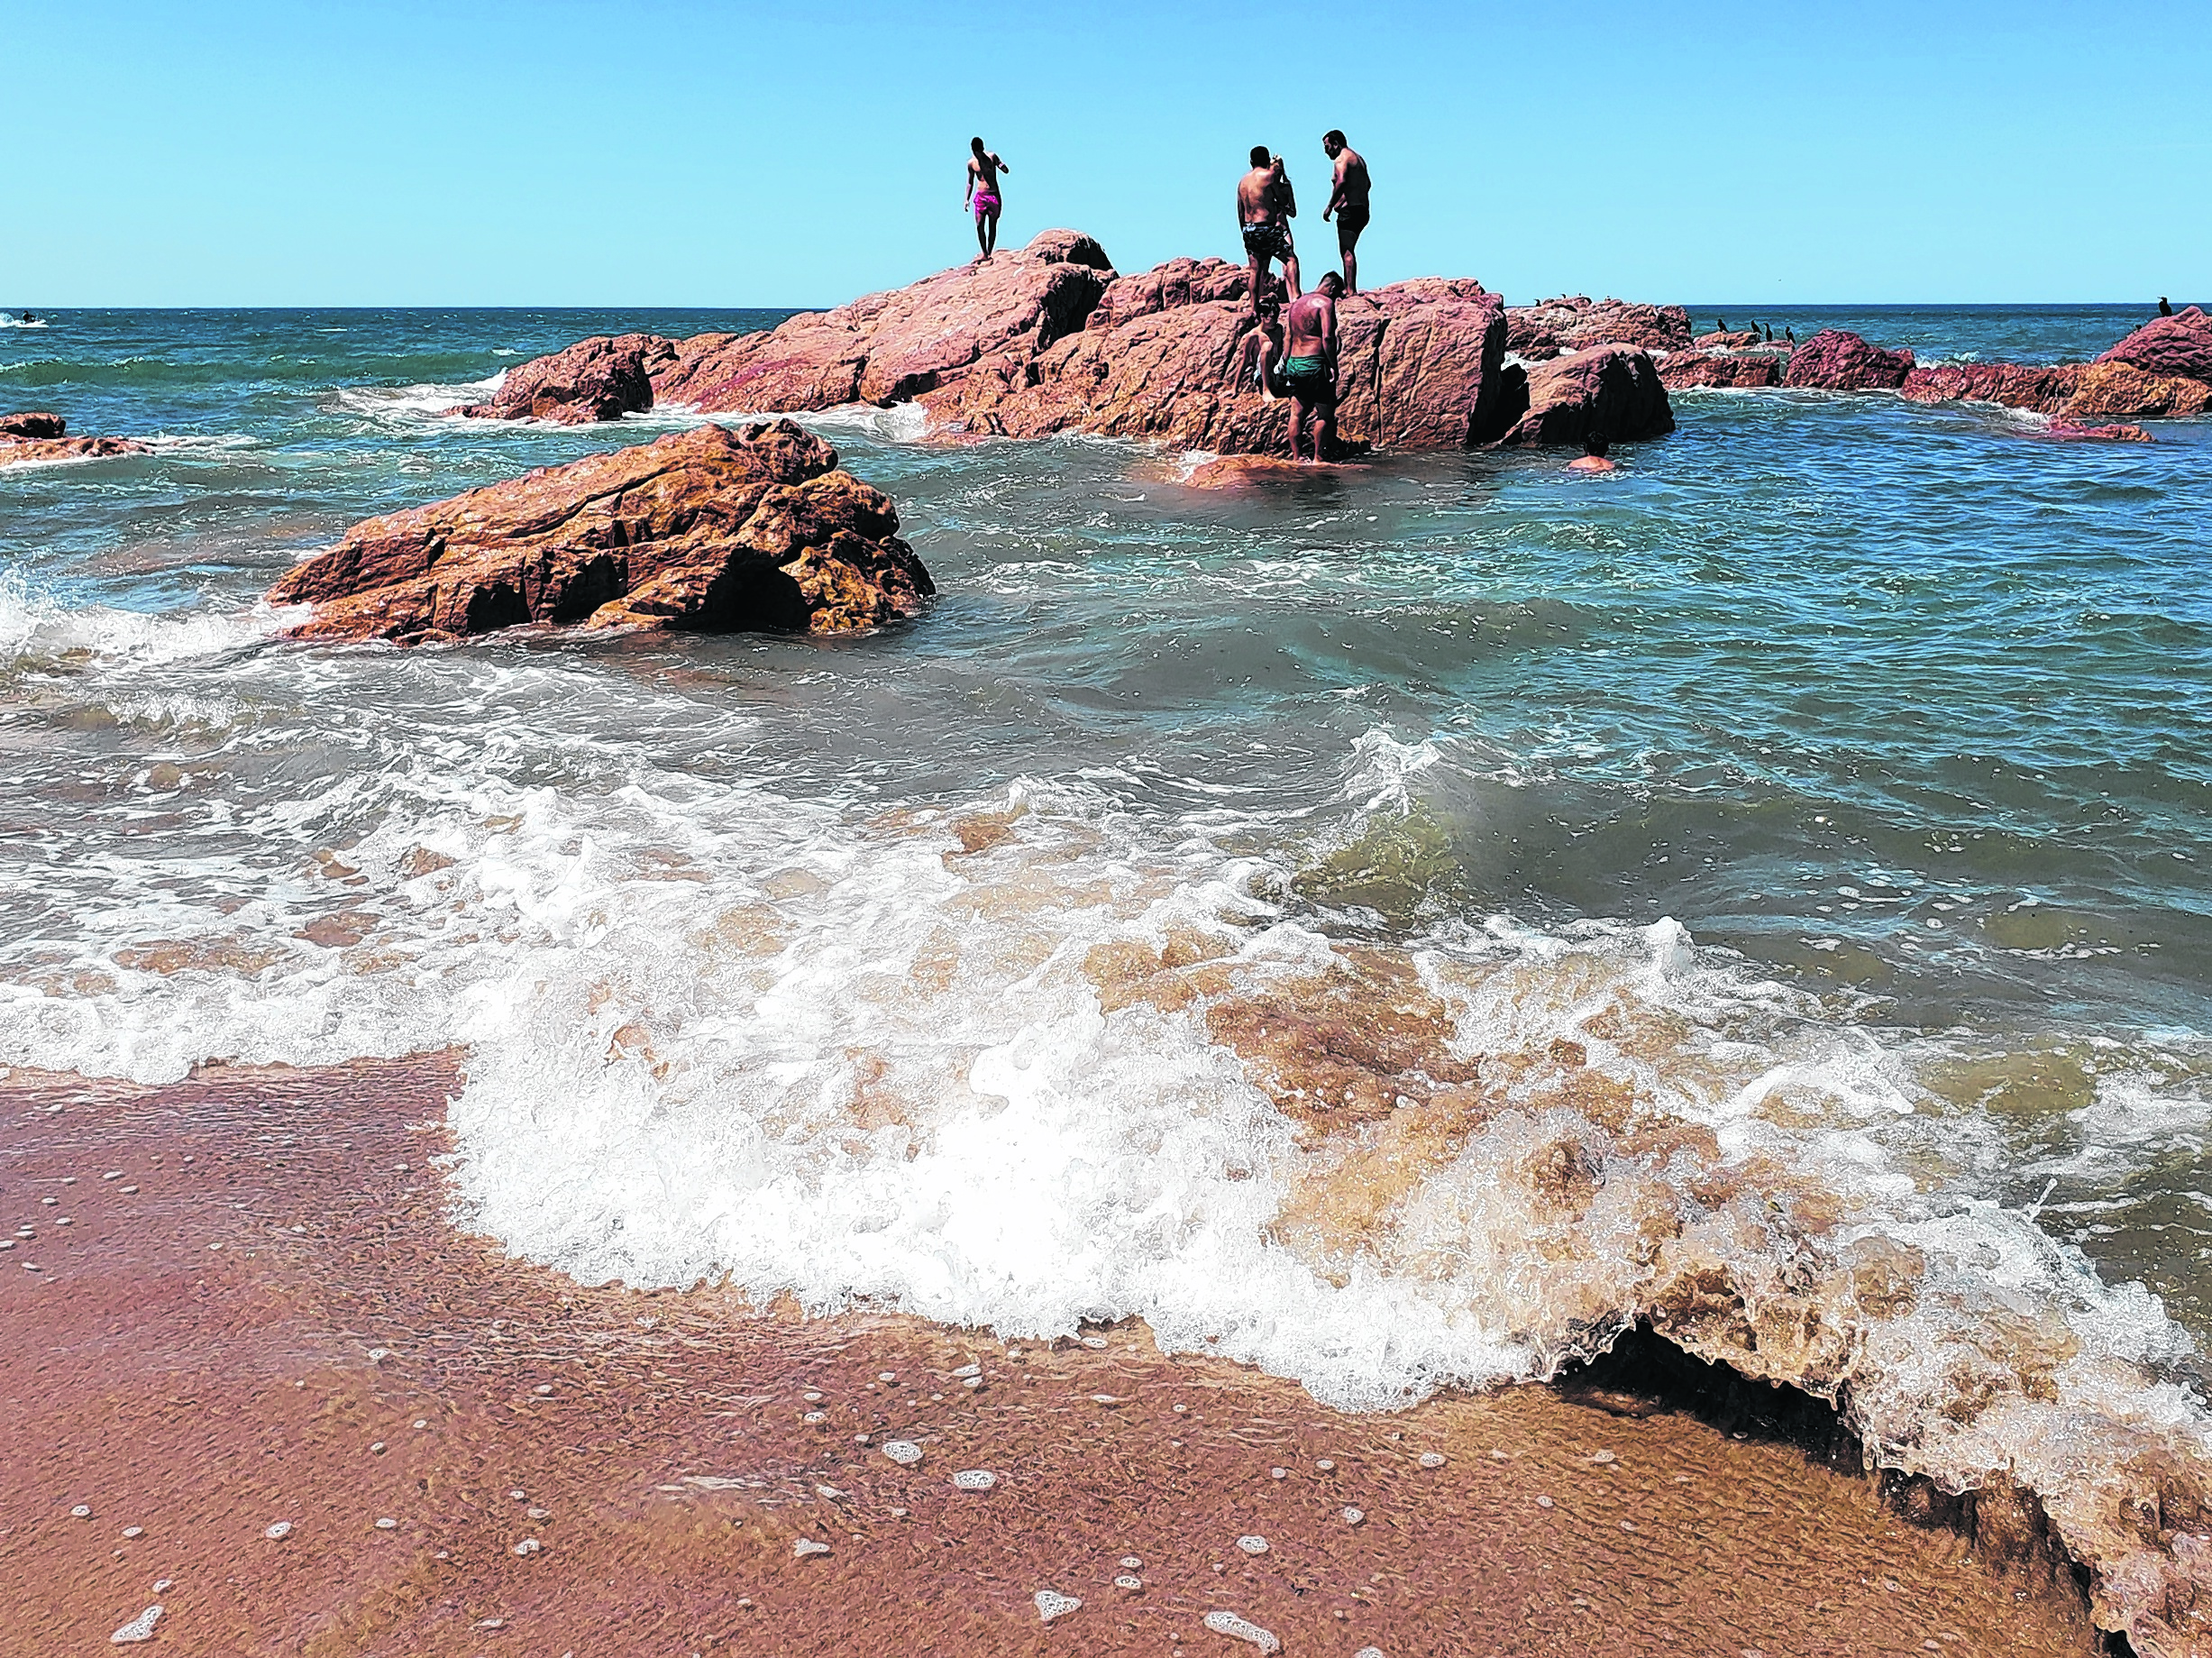 En la playa de Las Coloradas, el mar avanzó más que otros días. Los turistas aprovecharon el momento para divertirse en el agua. (Foto: Martín Brunella)